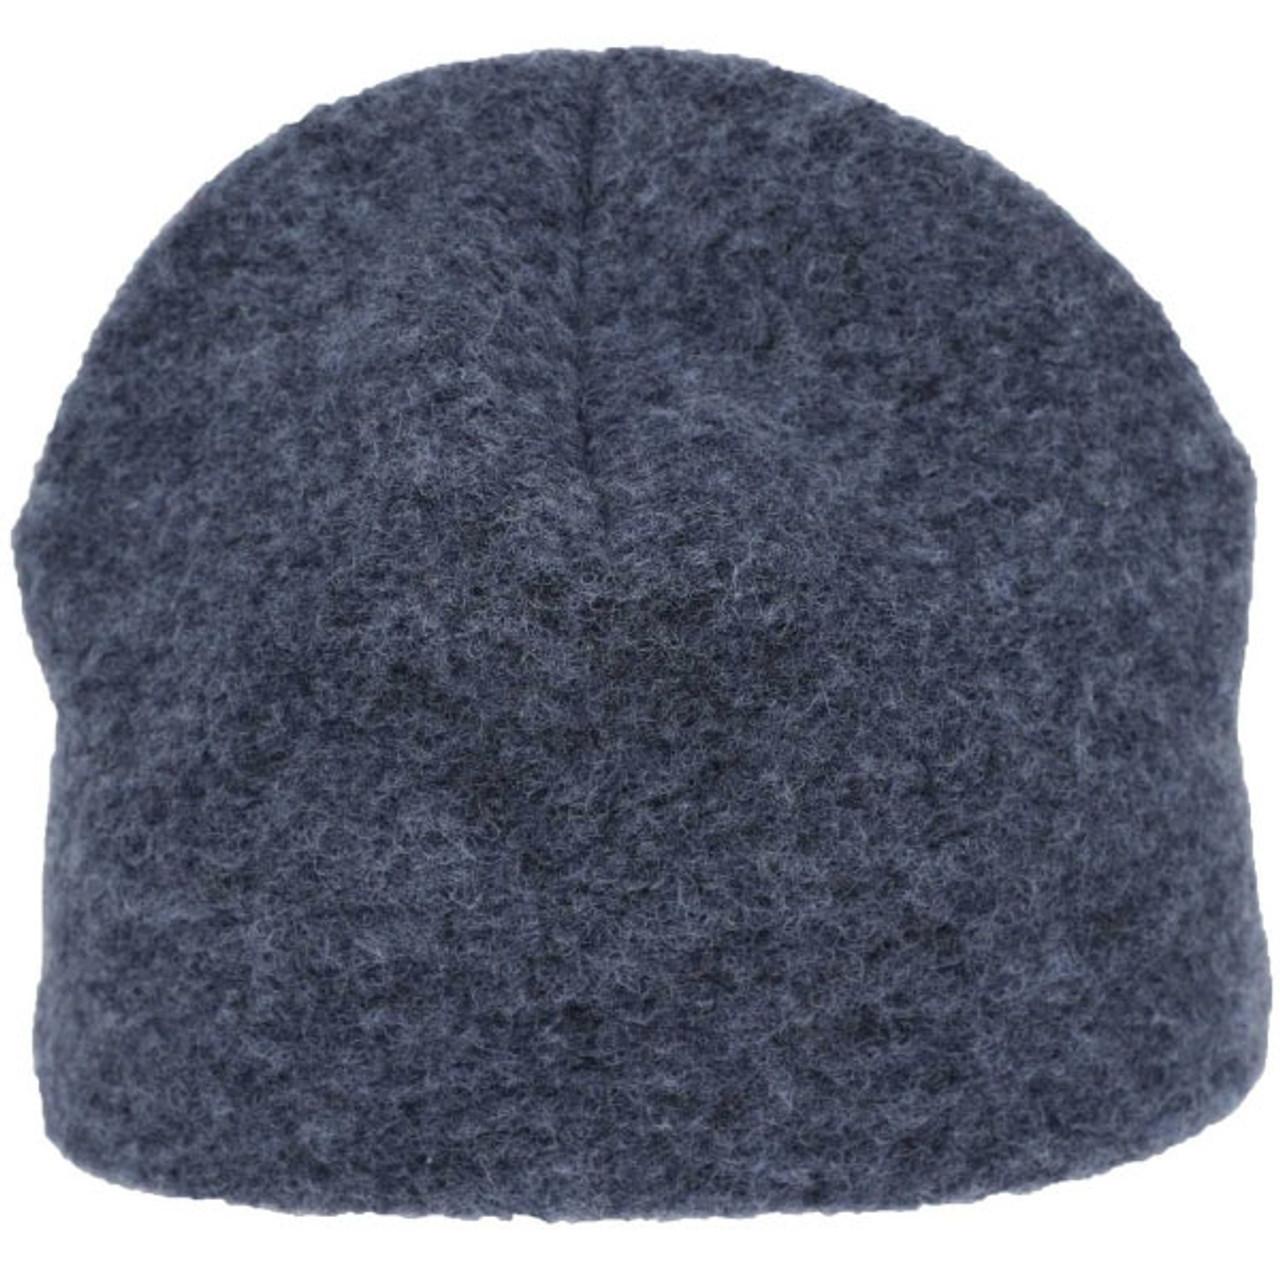 Woollen Beanie Hat